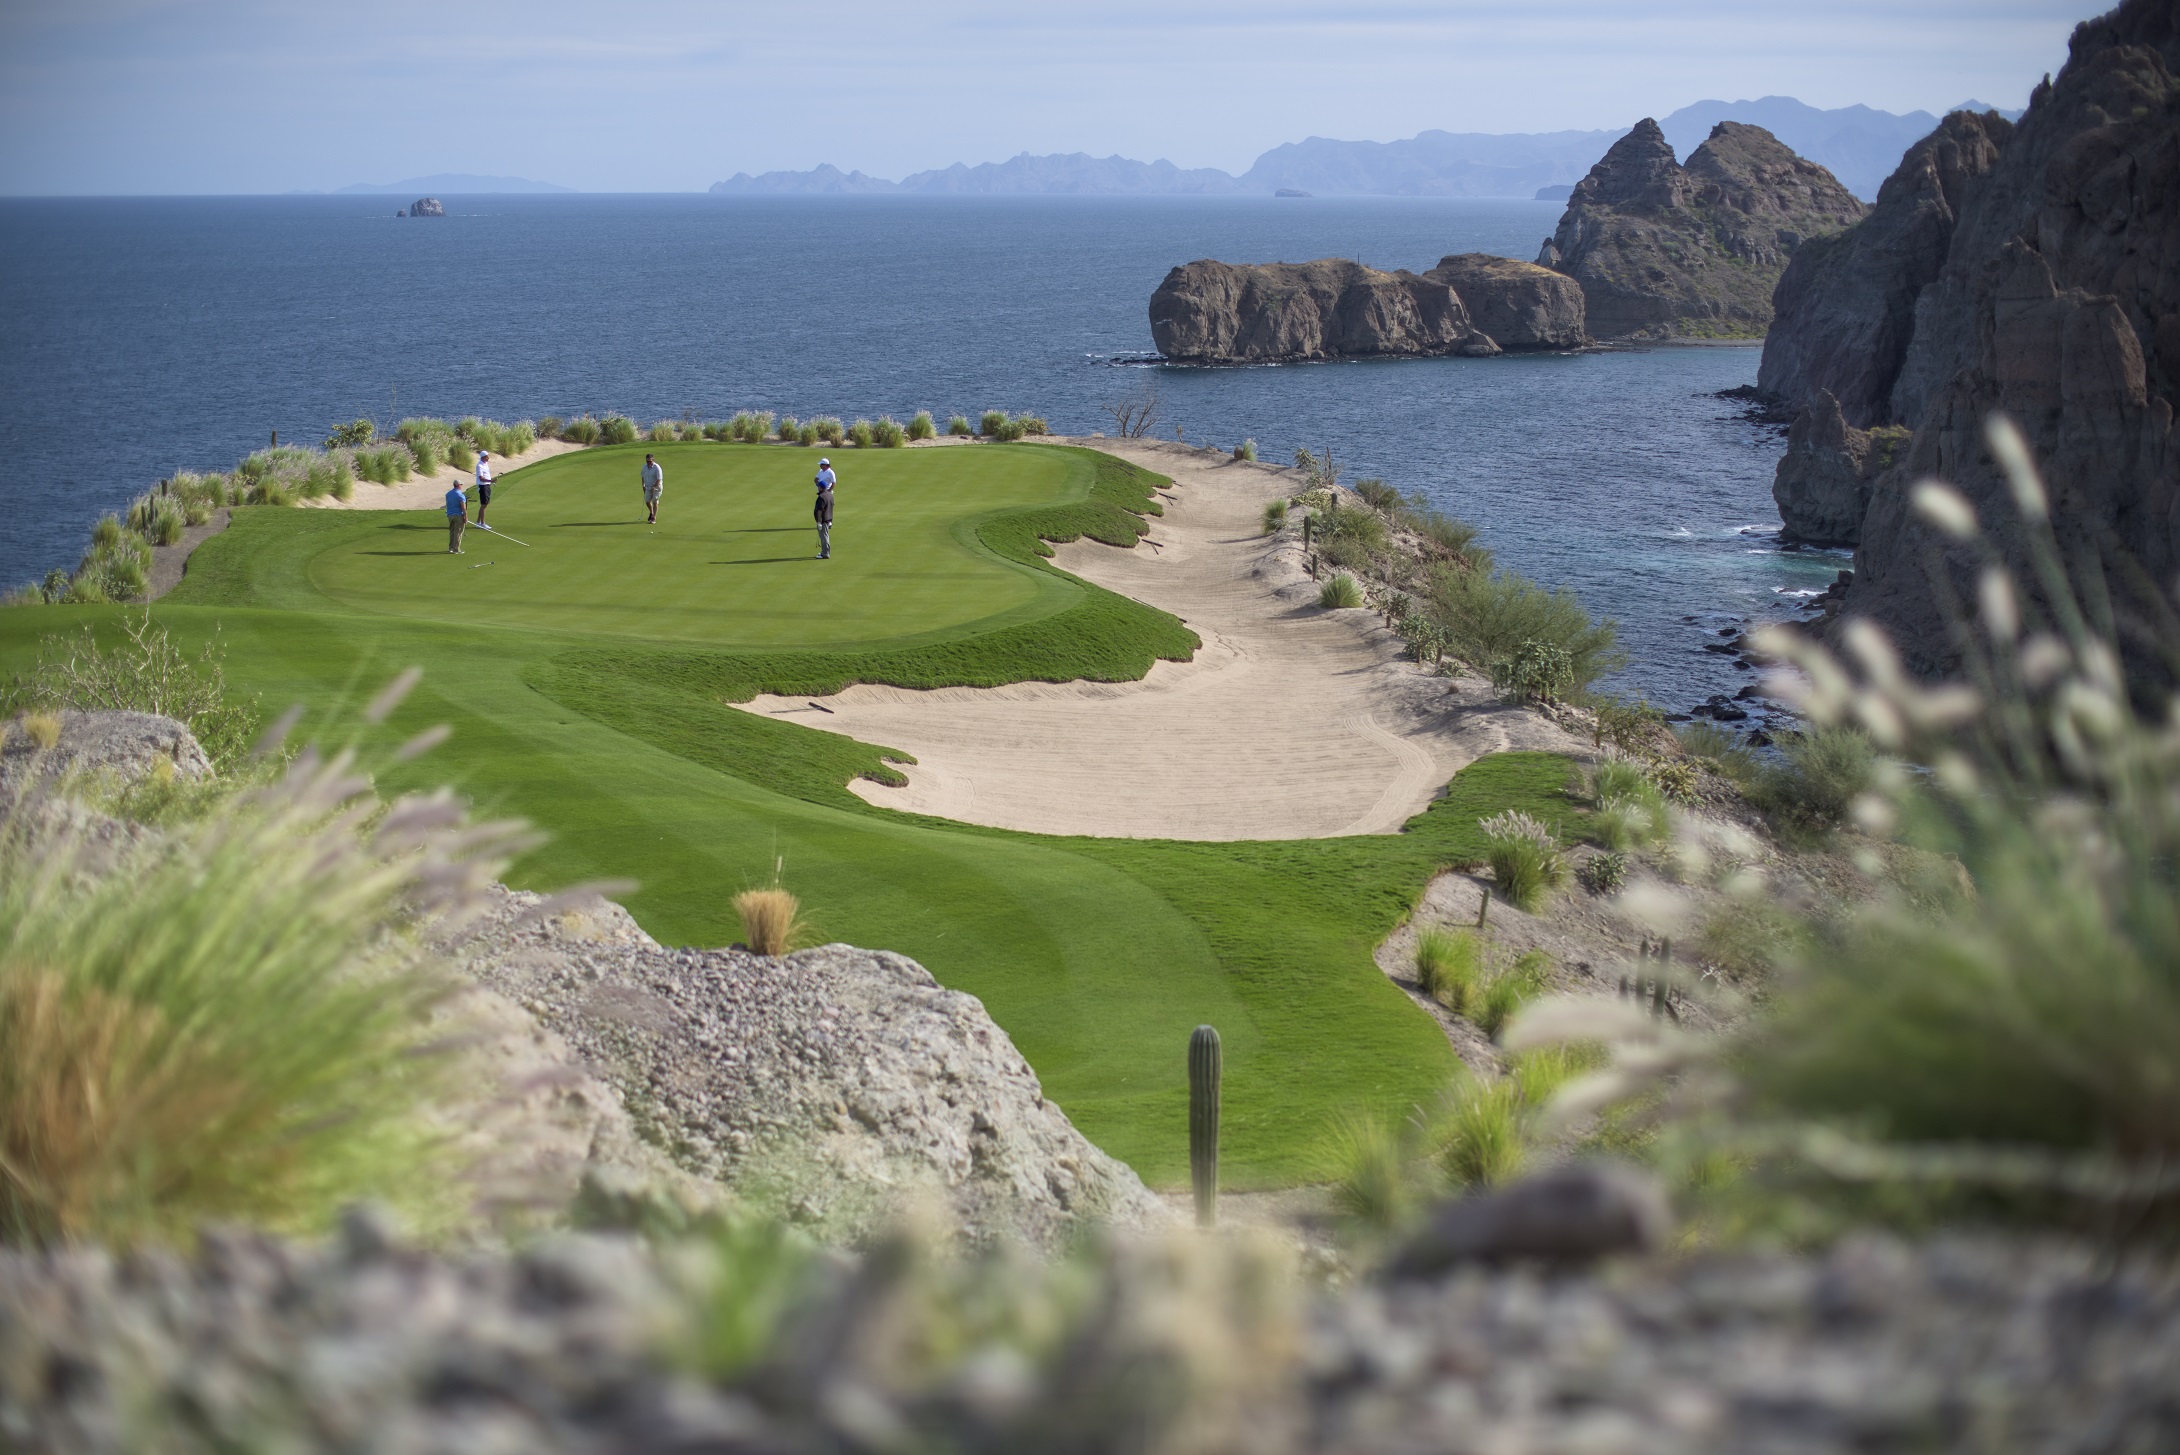 Jugar golf frente al mar en loreto